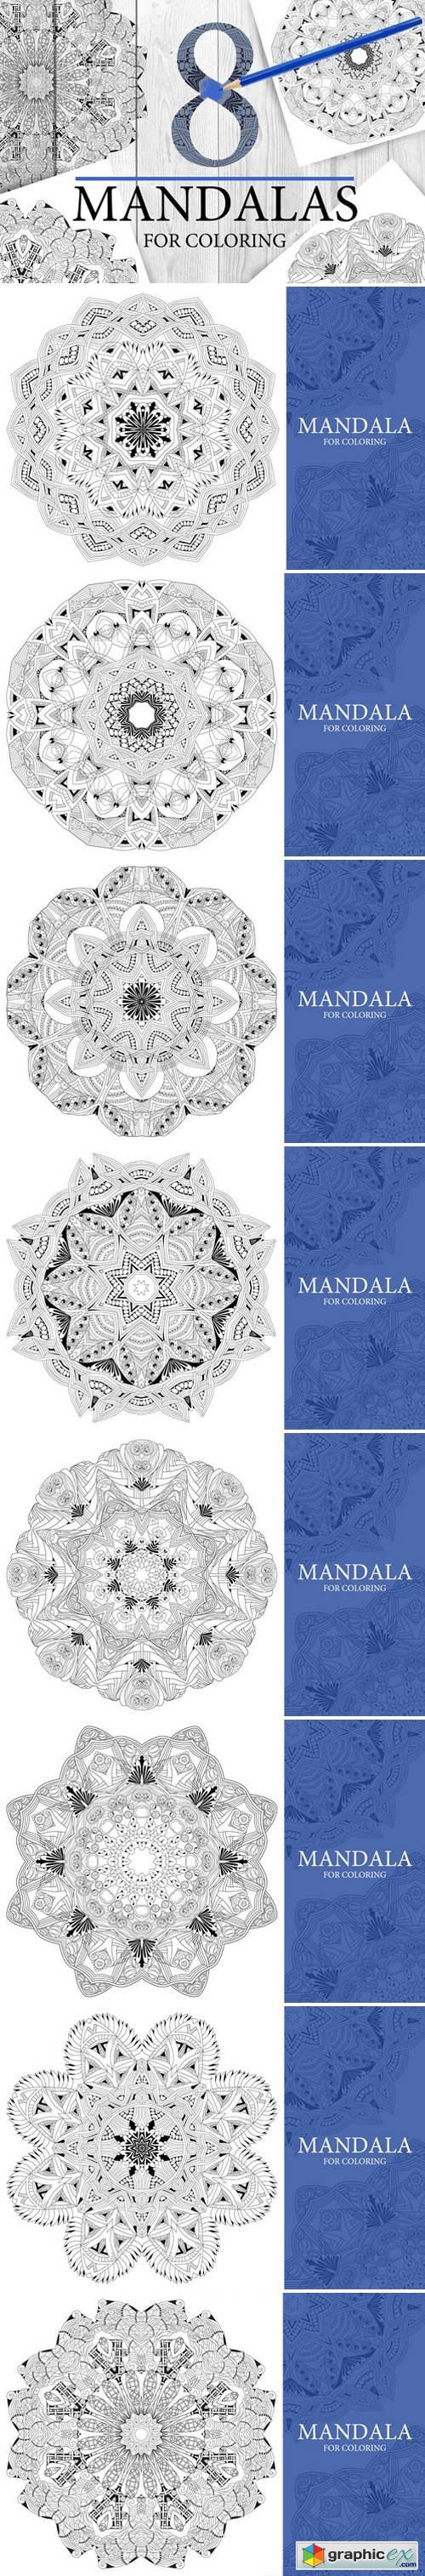 Mandalas for coloring